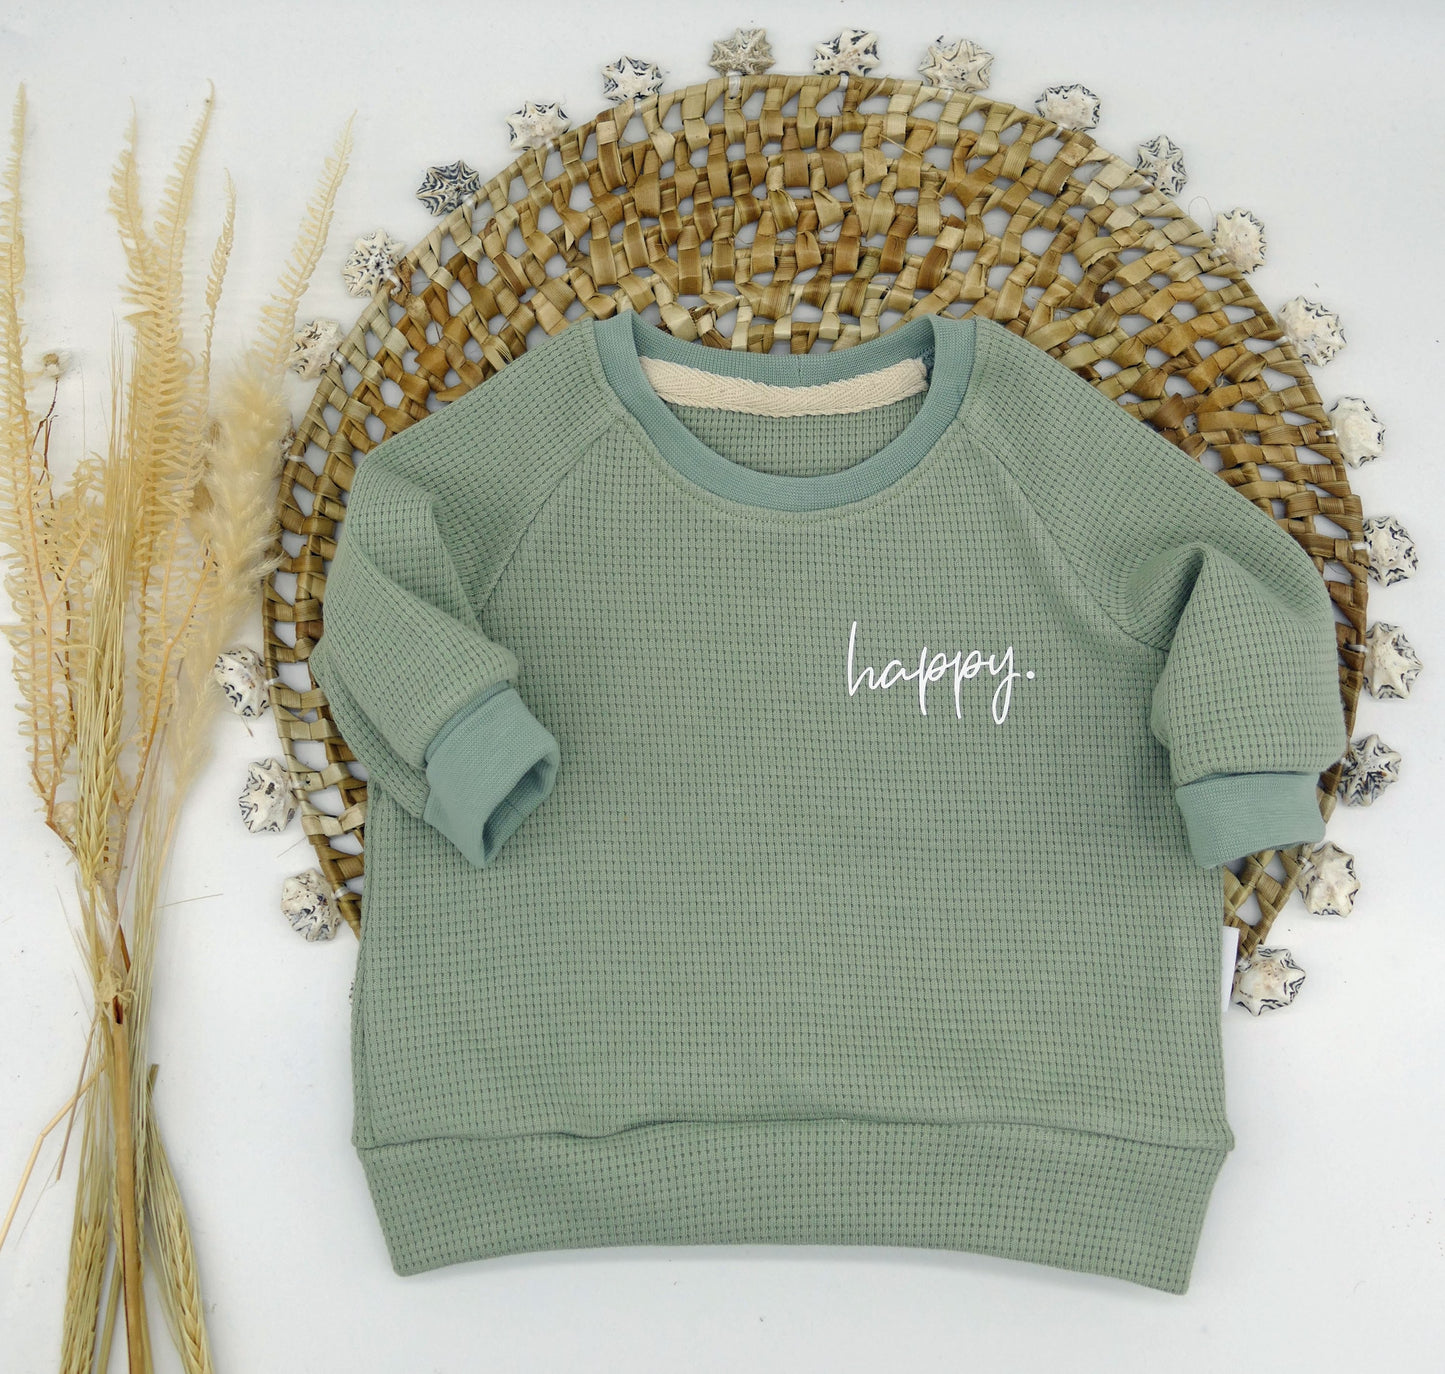 Sweater "Happy." (Dusty Green)